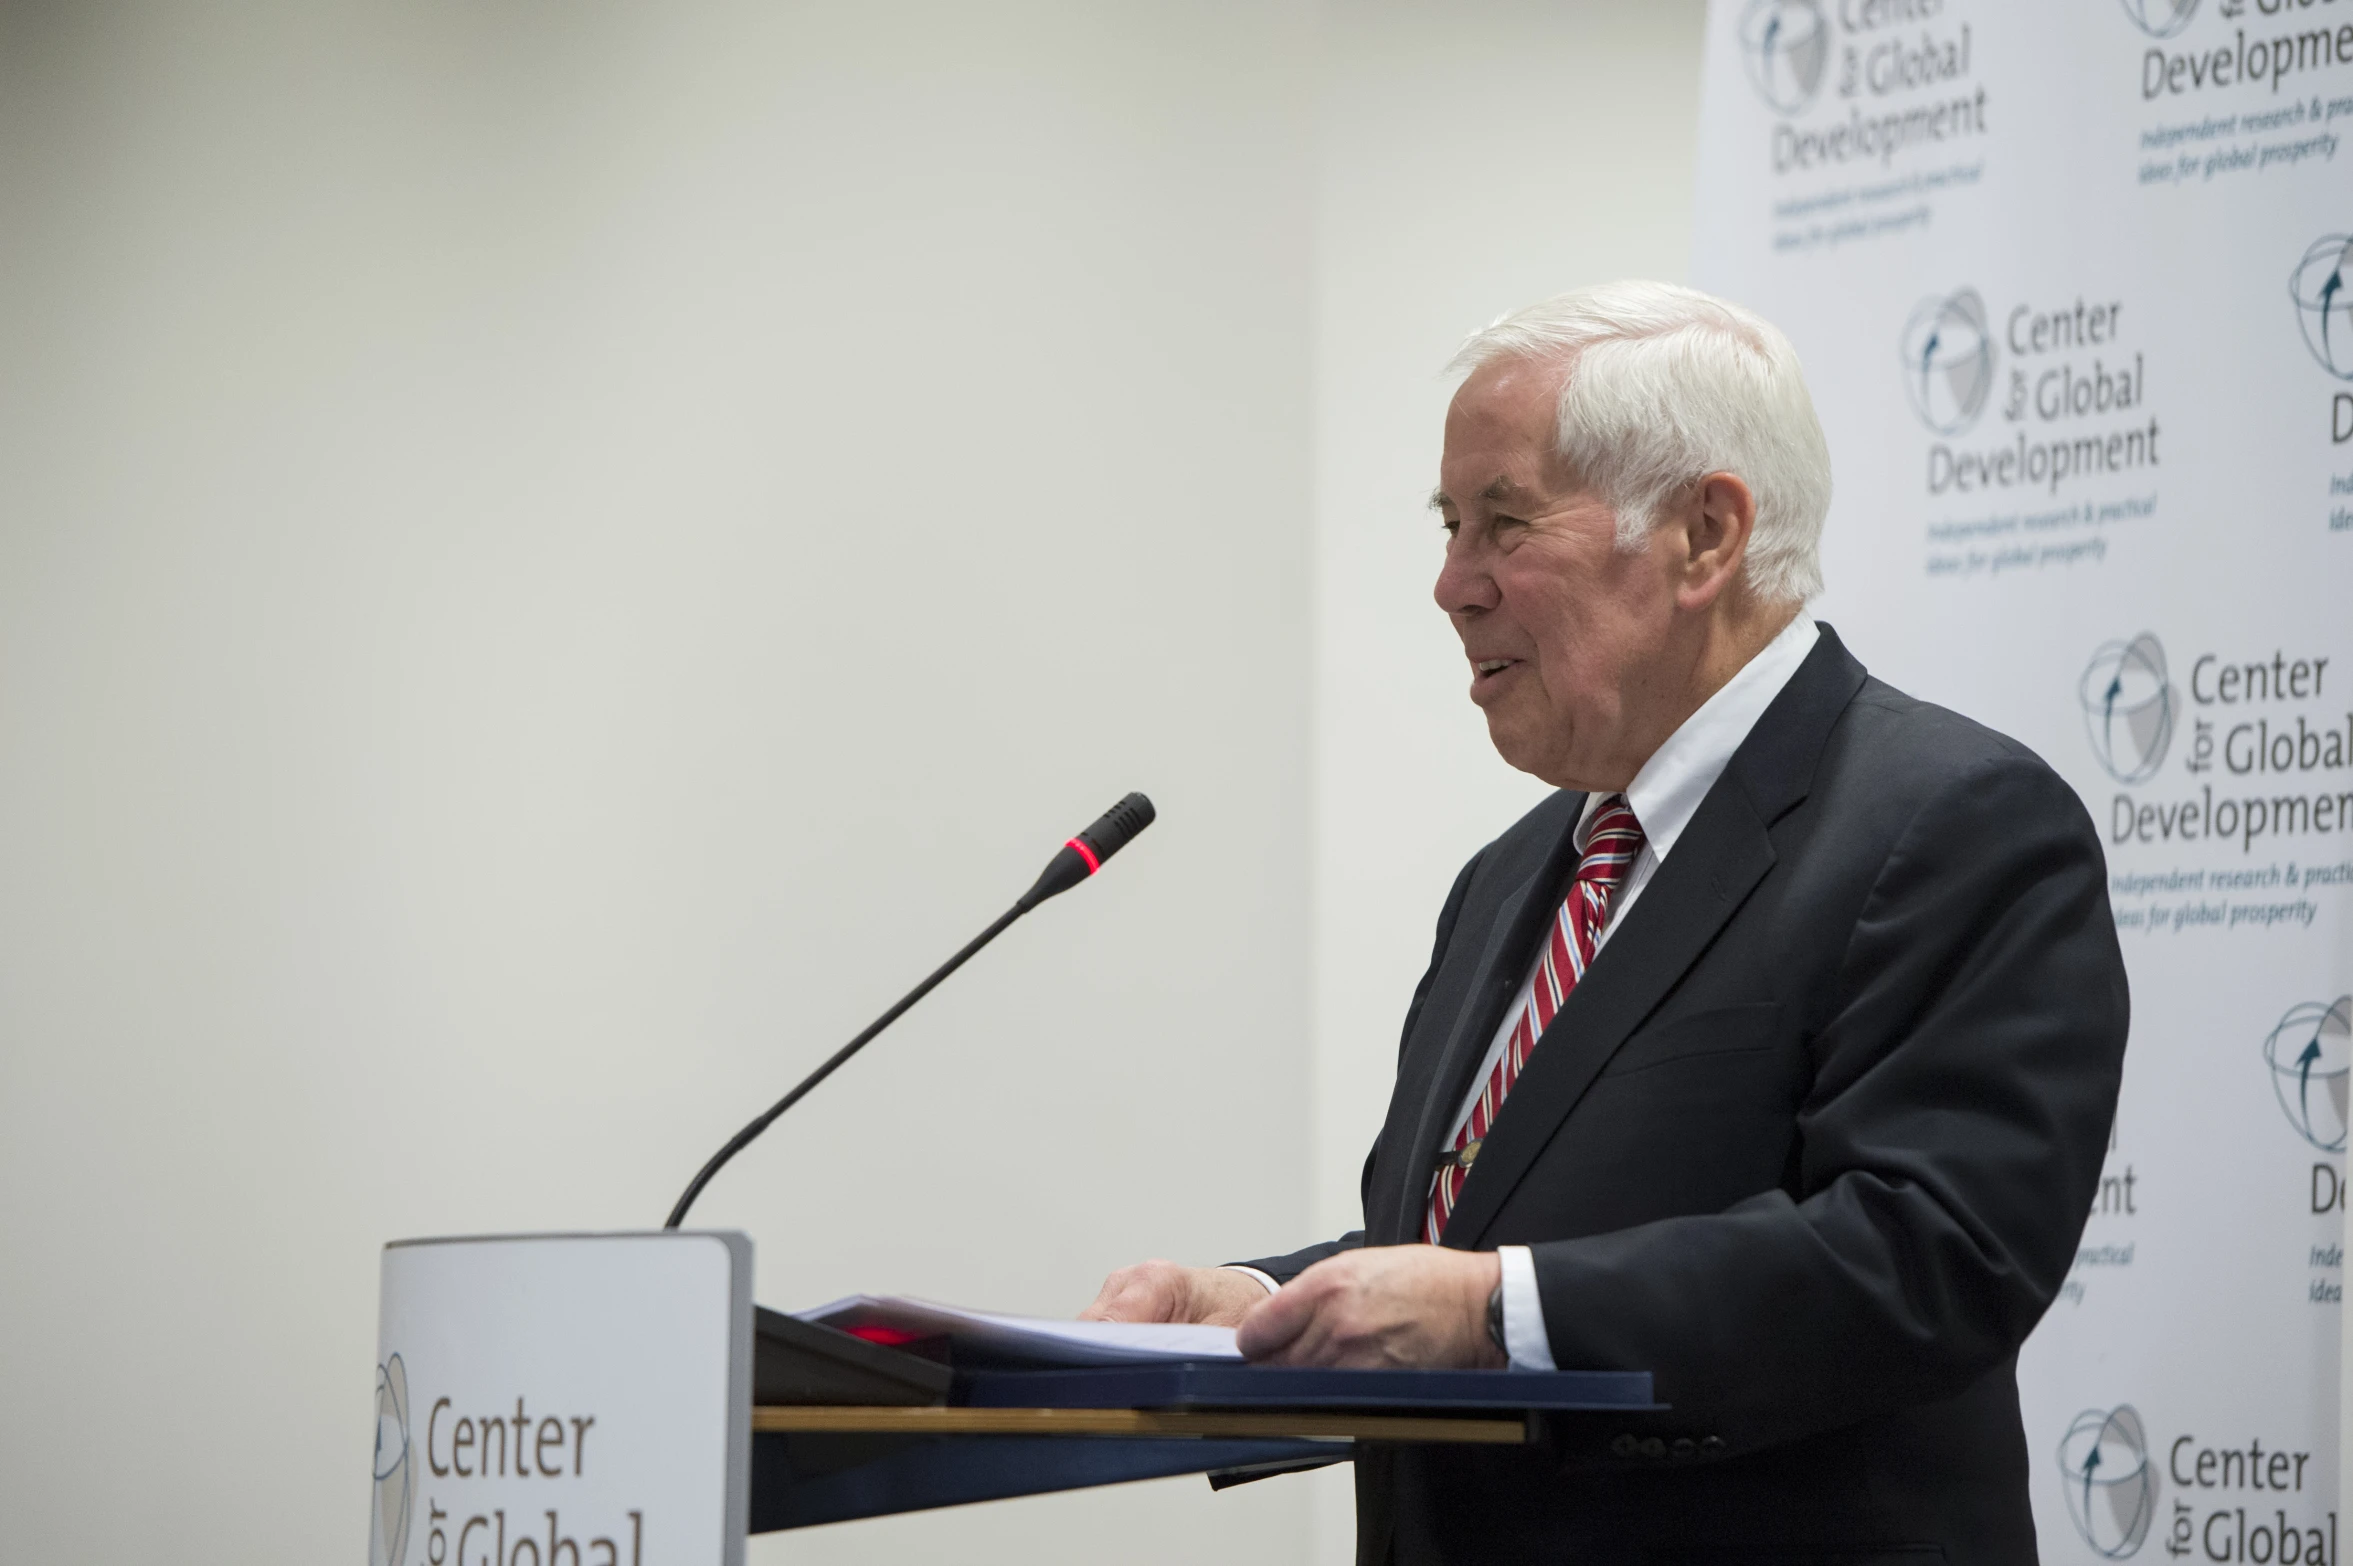 an older man speaking at a podium